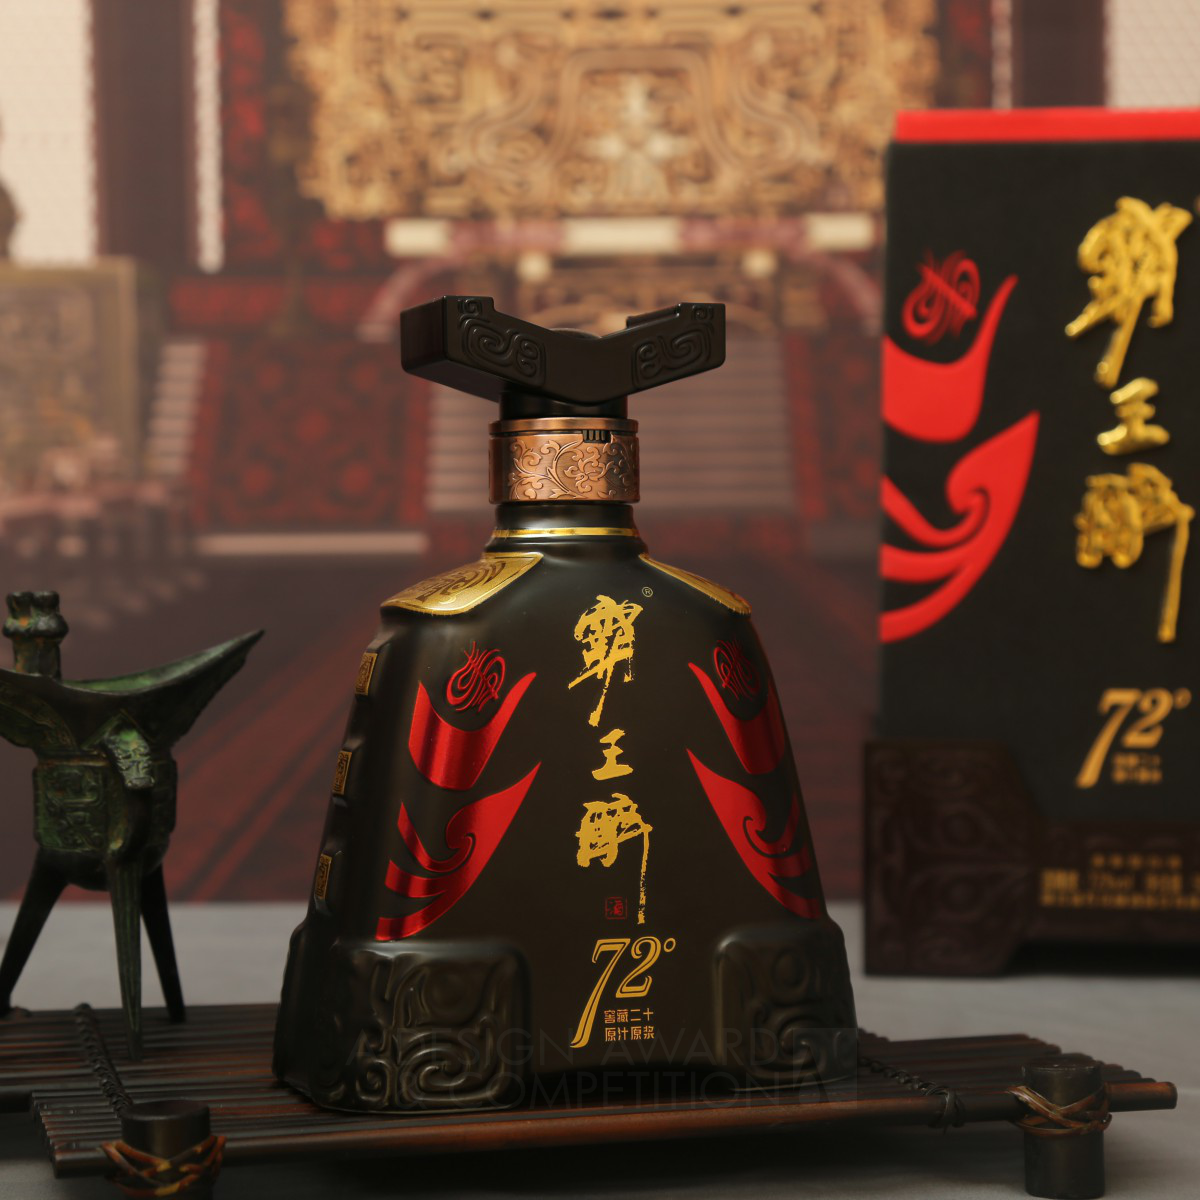 72°Xiangyu the Conqueror Liquor Chinese Baijiu by HUBEI SHIHUA LIQUOR CO.,LTD